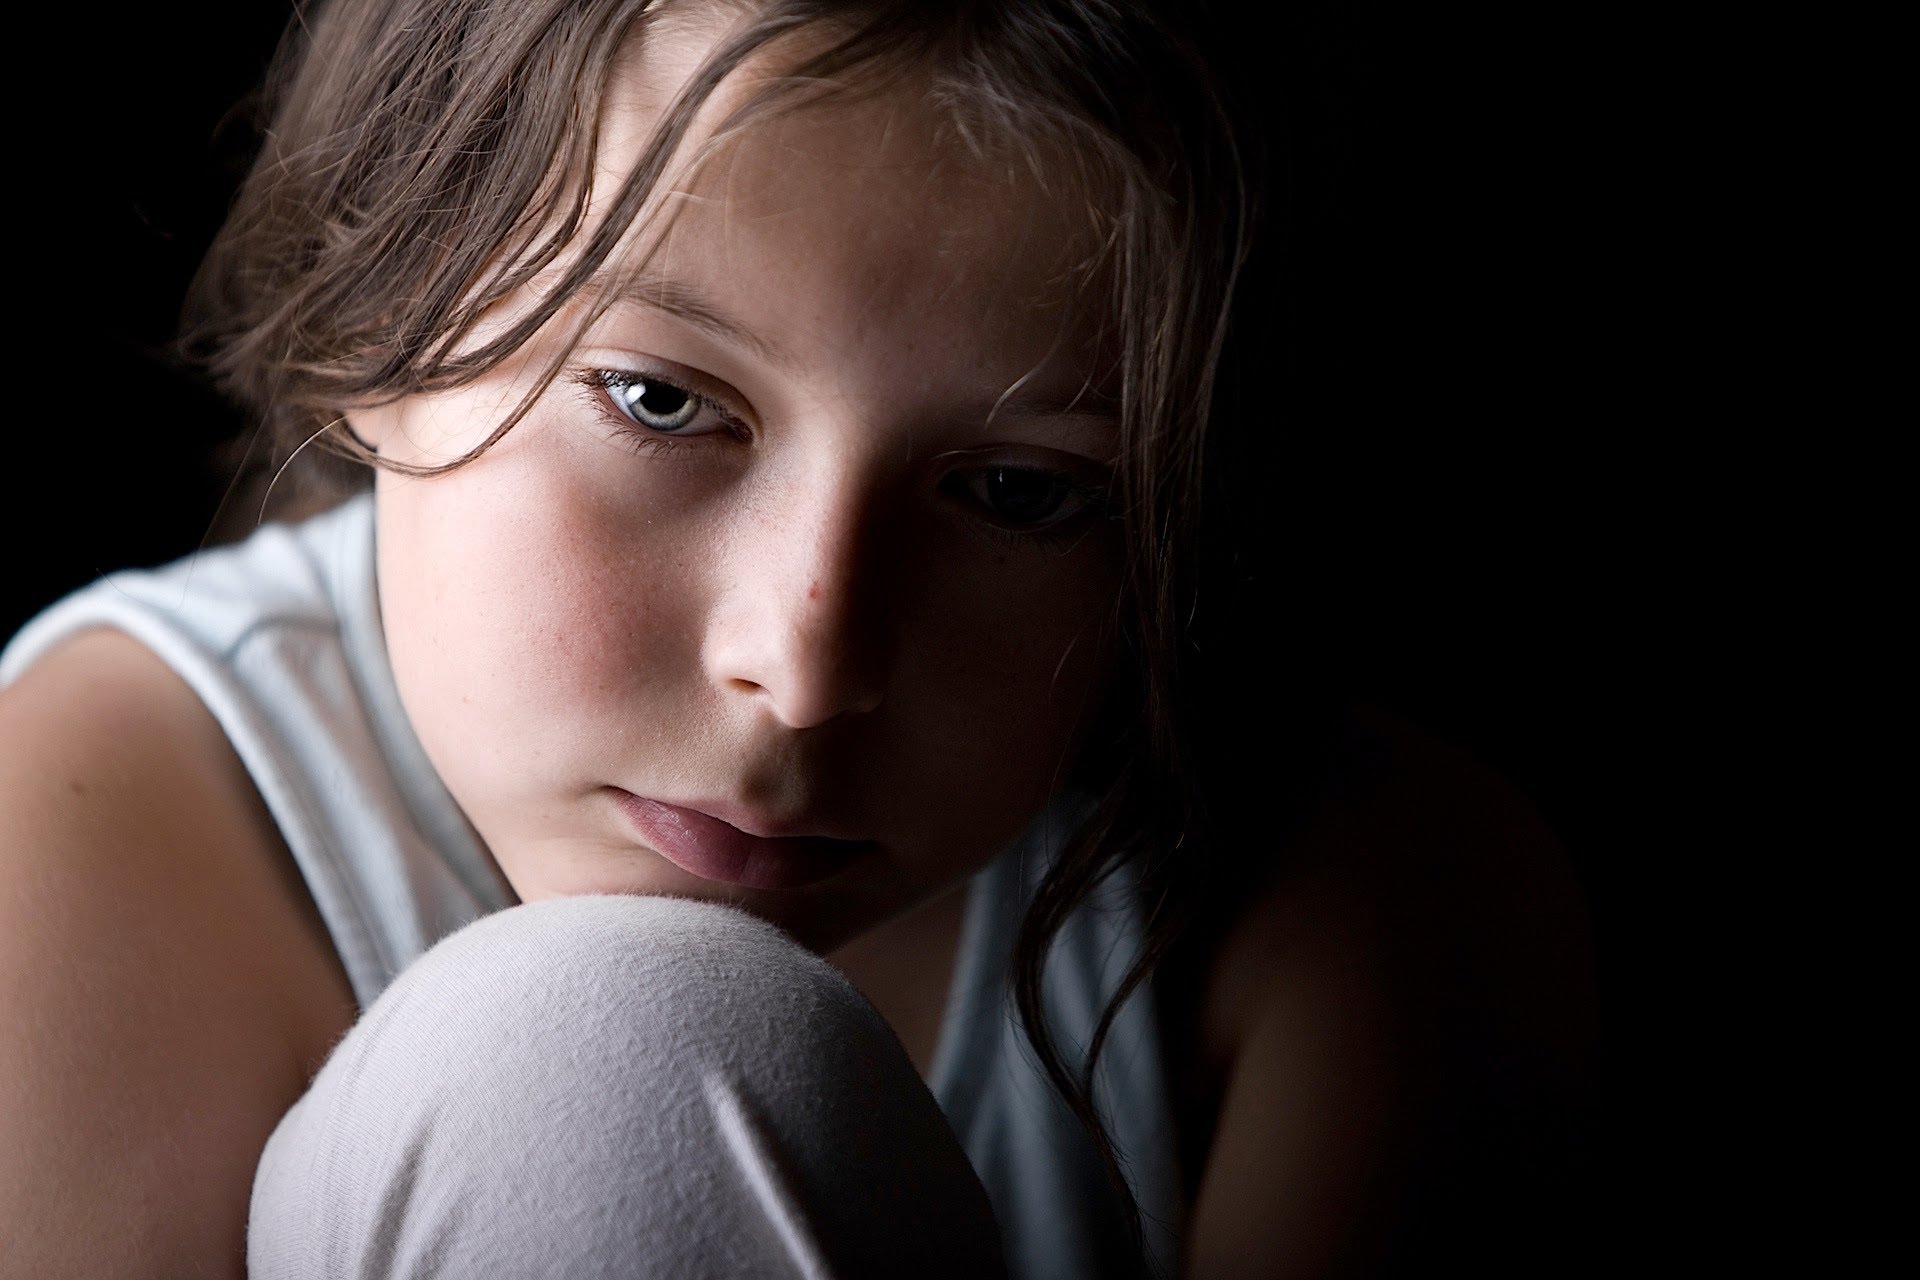 Αναποτελεσματικά και μη ασφαλή τα αντικαταθλιπτικά σε παιδιά και εφήβους